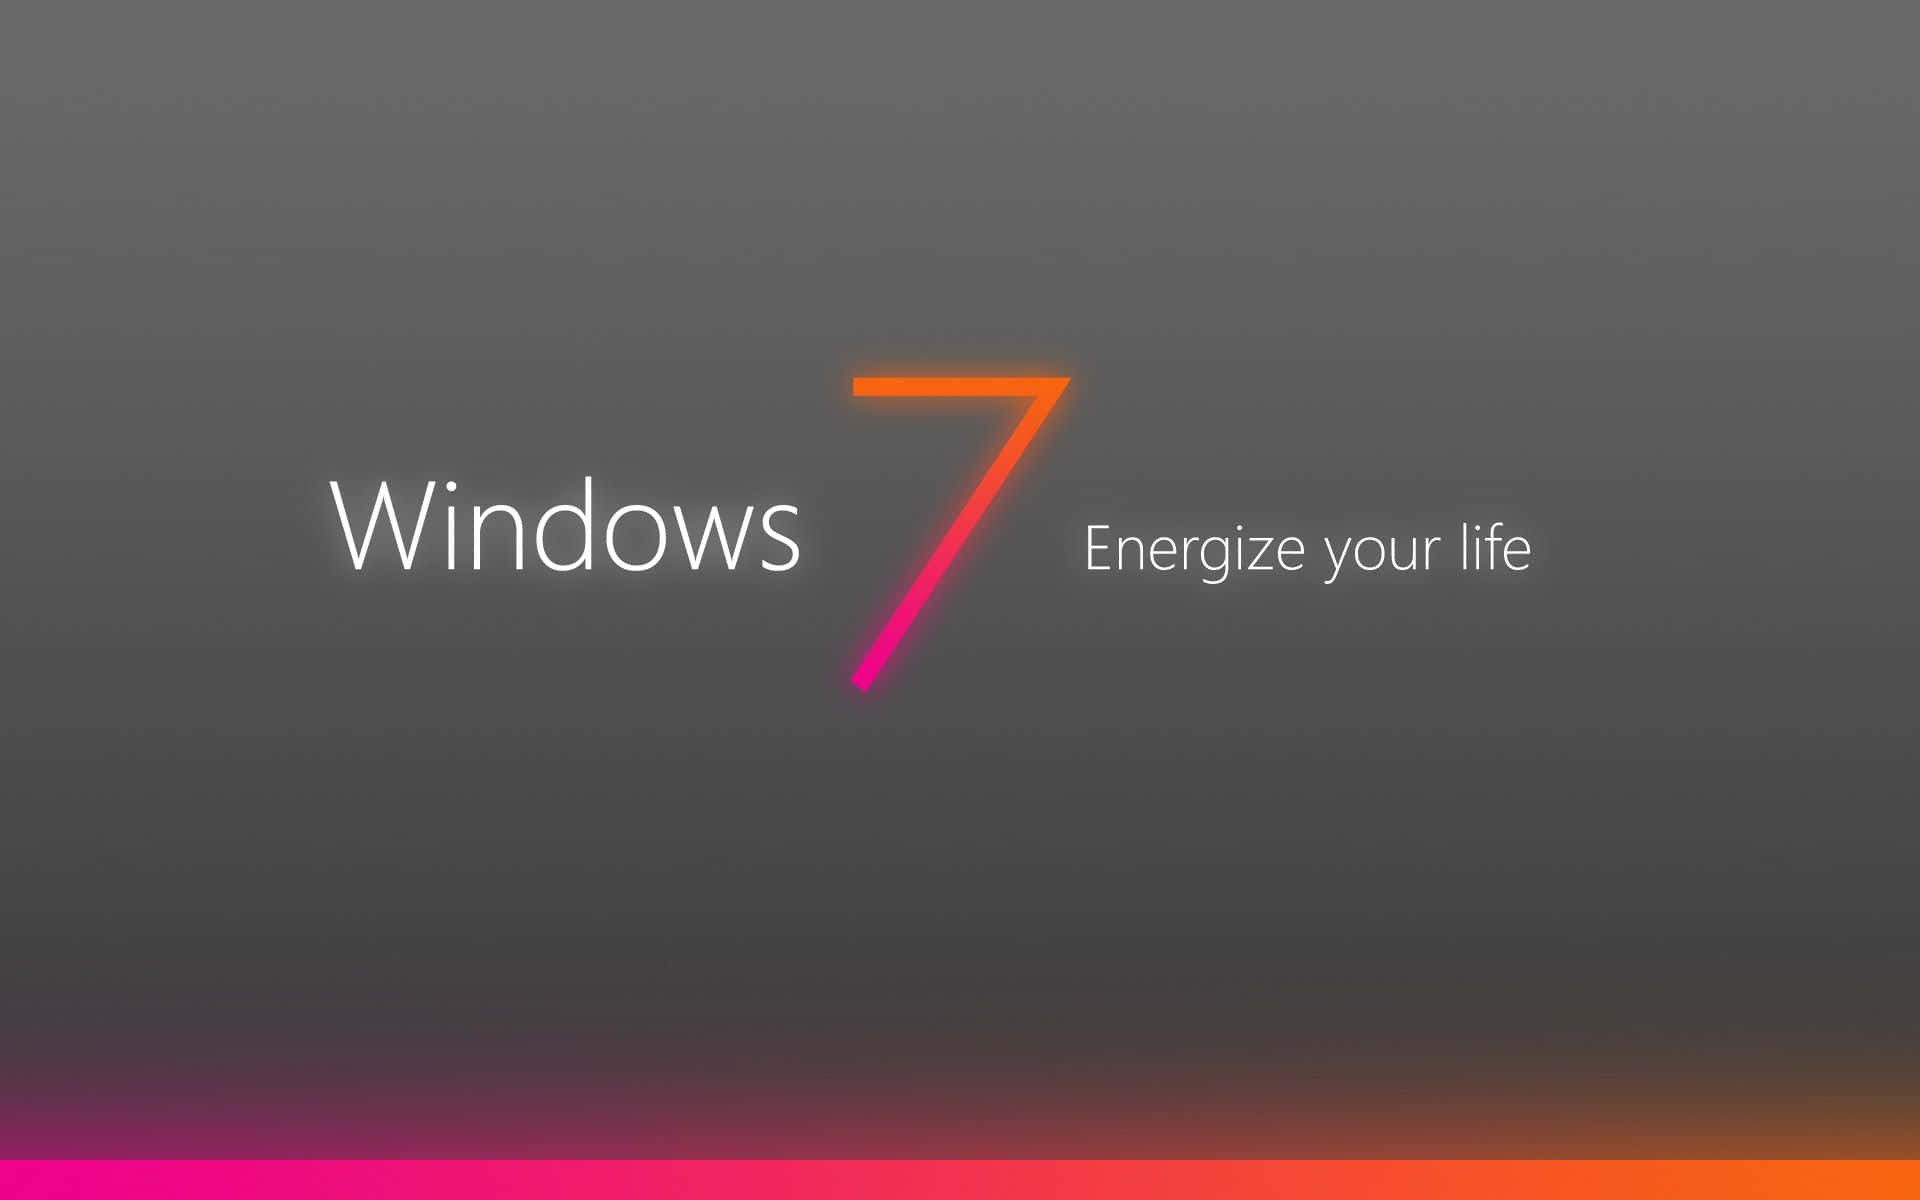 Nummer7 Windows Ger Energi Åt Ditt Liv. Wallpaper